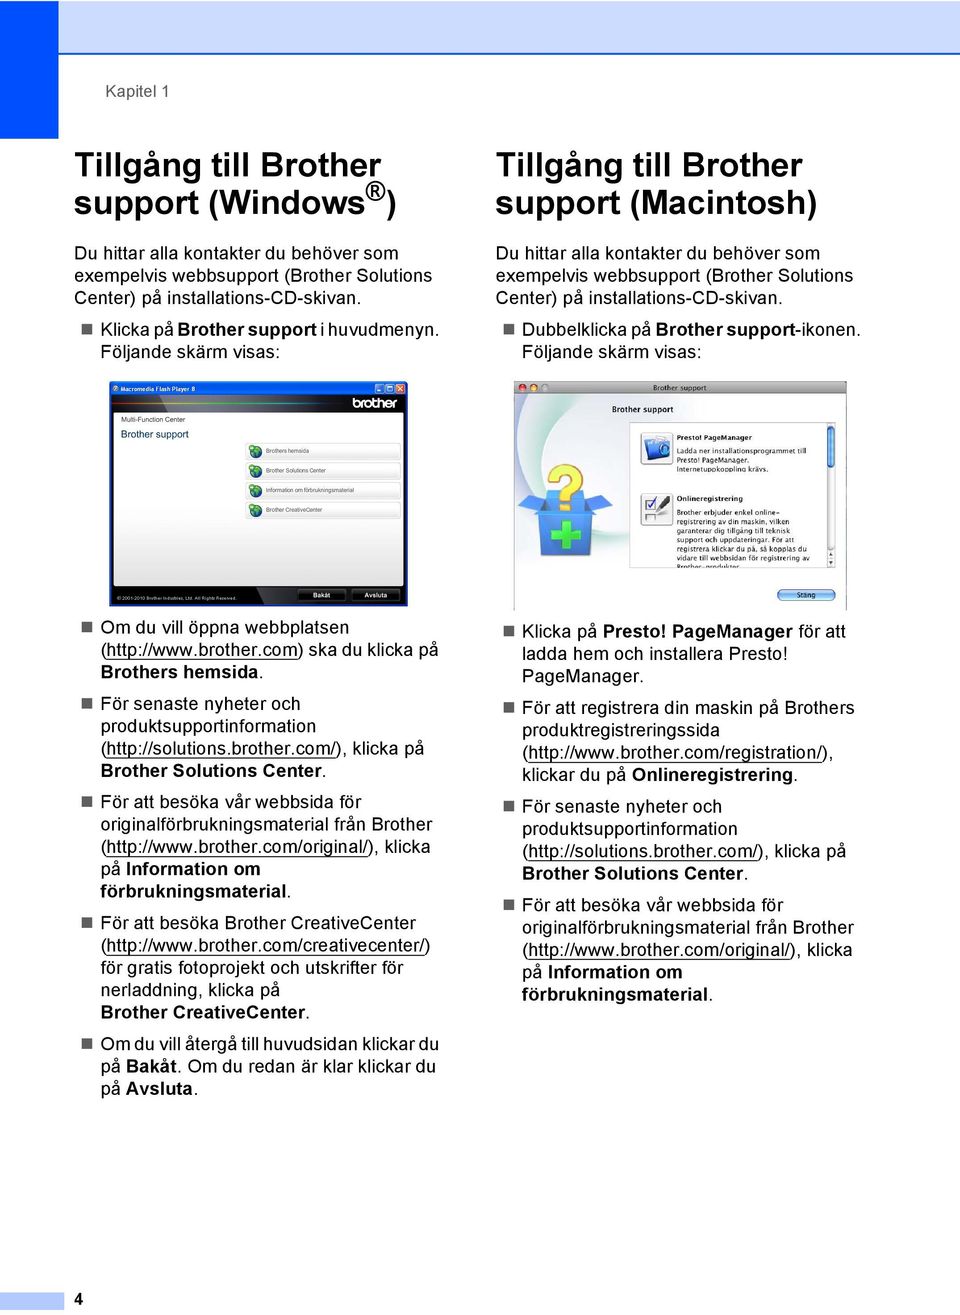 Följande skärm visas: Tillgång till Brother support (Macintosh) 1 Du hittar alla kontakter du behöver som exempelvis webbsupport (Brother Solutions Center) på installations-cd-skivan.